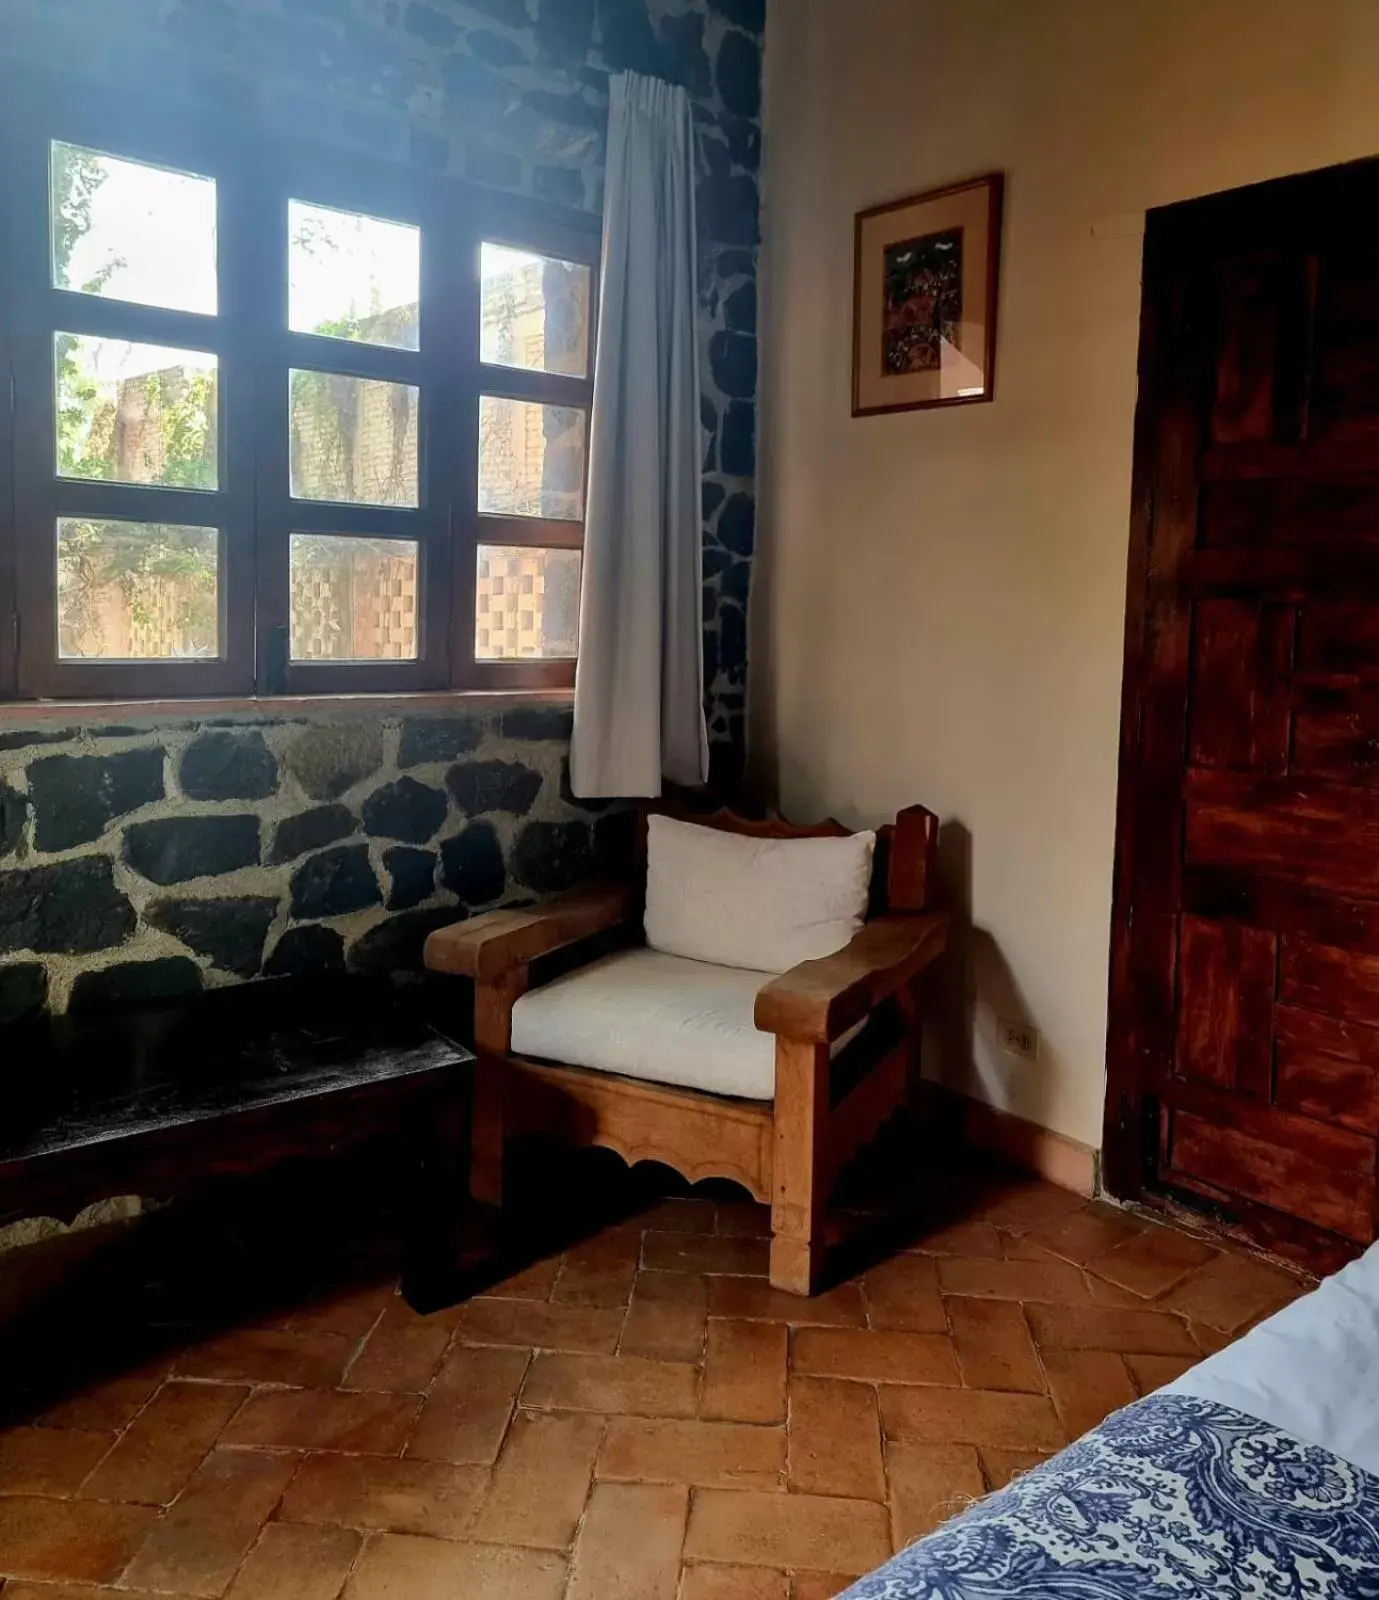 Photo of the whole room, Seating Area in Hacienda de las Flores